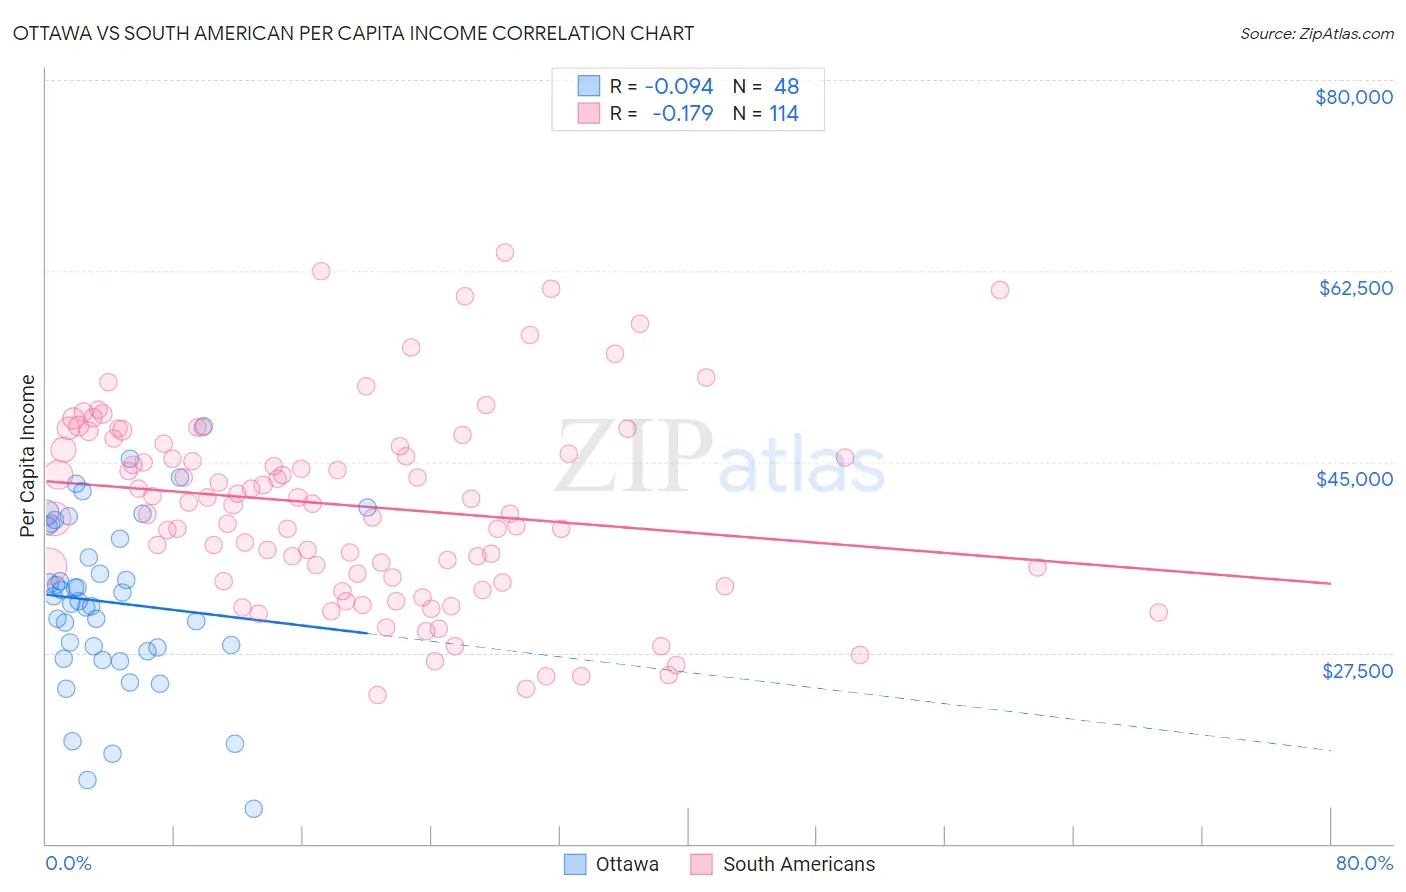 Ottawa vs South American Per Capita Income